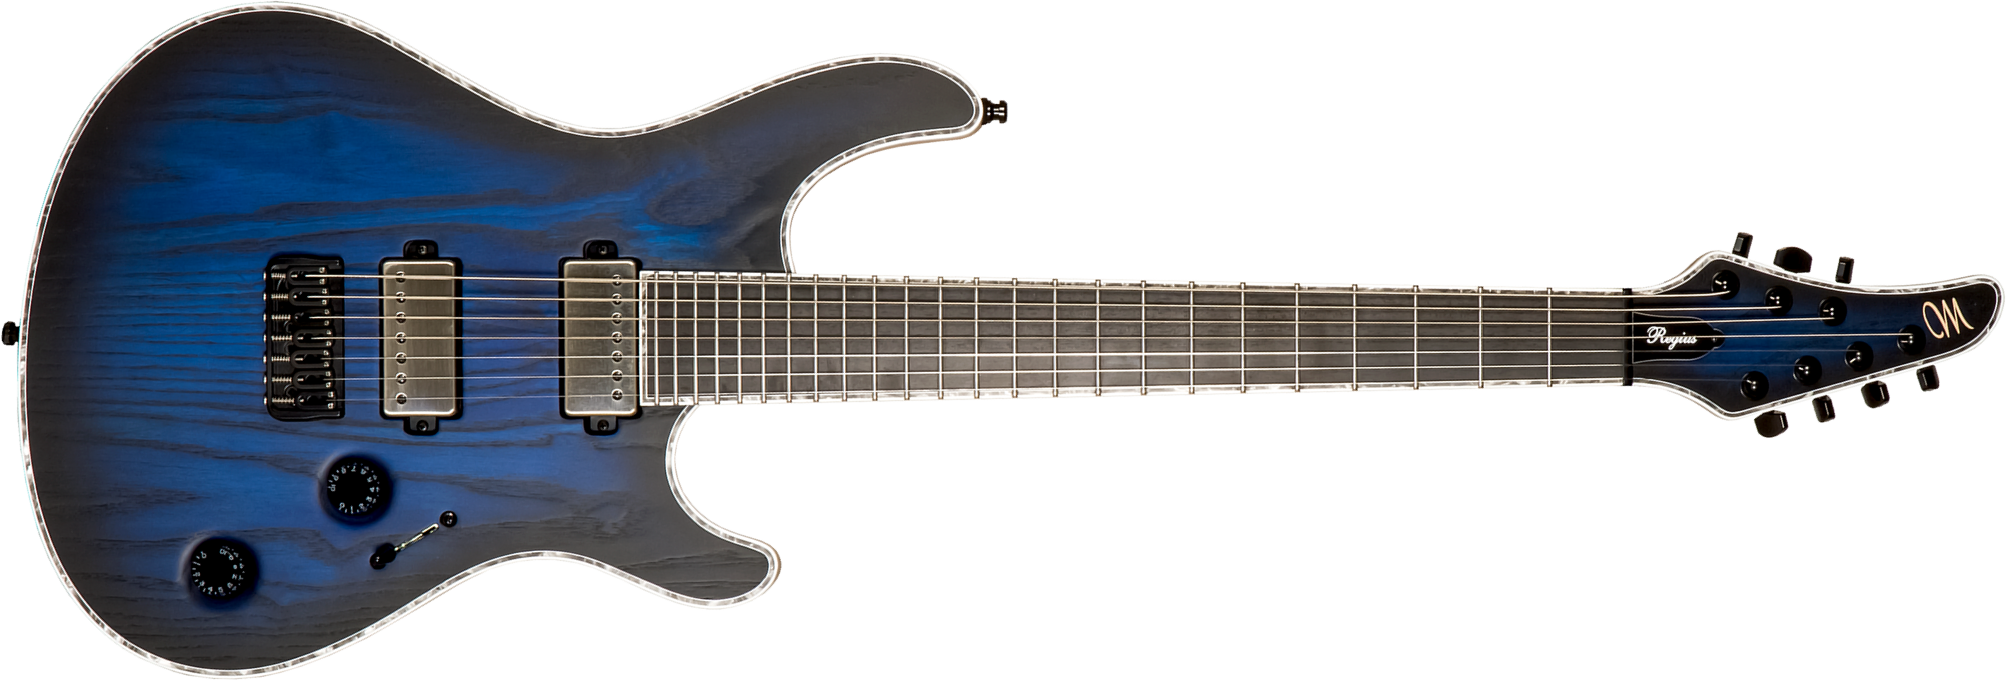 Mayones Guitars Regius Gothic Ash 7c 2h Bkp Ht Eb #rf2311786 - Trans Dirty Blue Burst / Natural Matt - Guitare Électrique 7 Cordes - Main picture